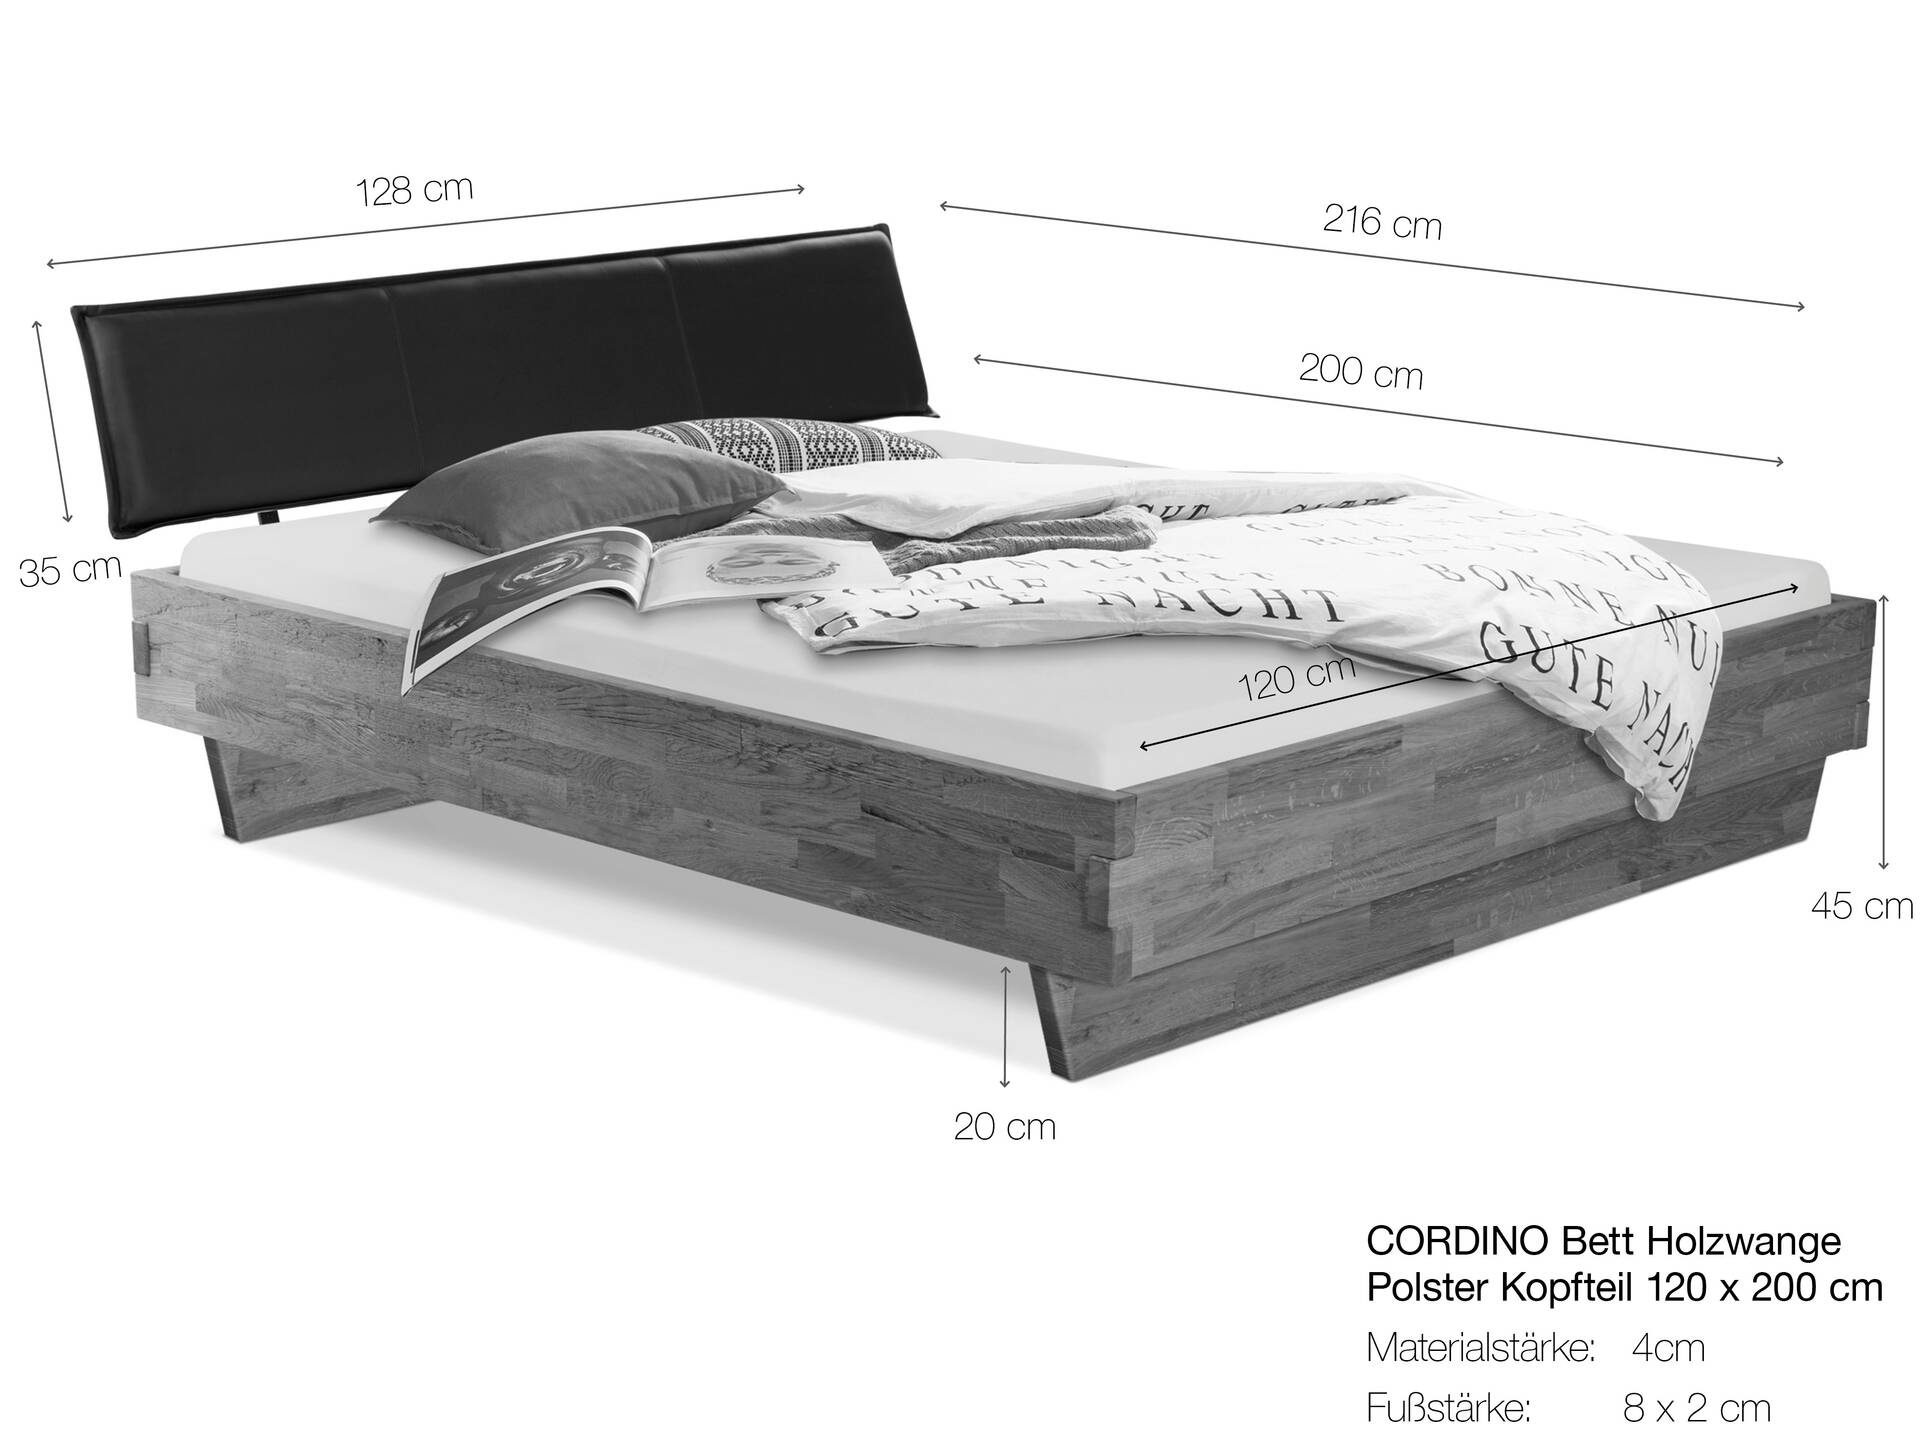 CORDINO Wangenbett aus Eiche mit Polster-Kopfteil, Material Massivholz 120 x 200 cm | Eiche unbehandelt | Kunstleder Braun | gebürstet